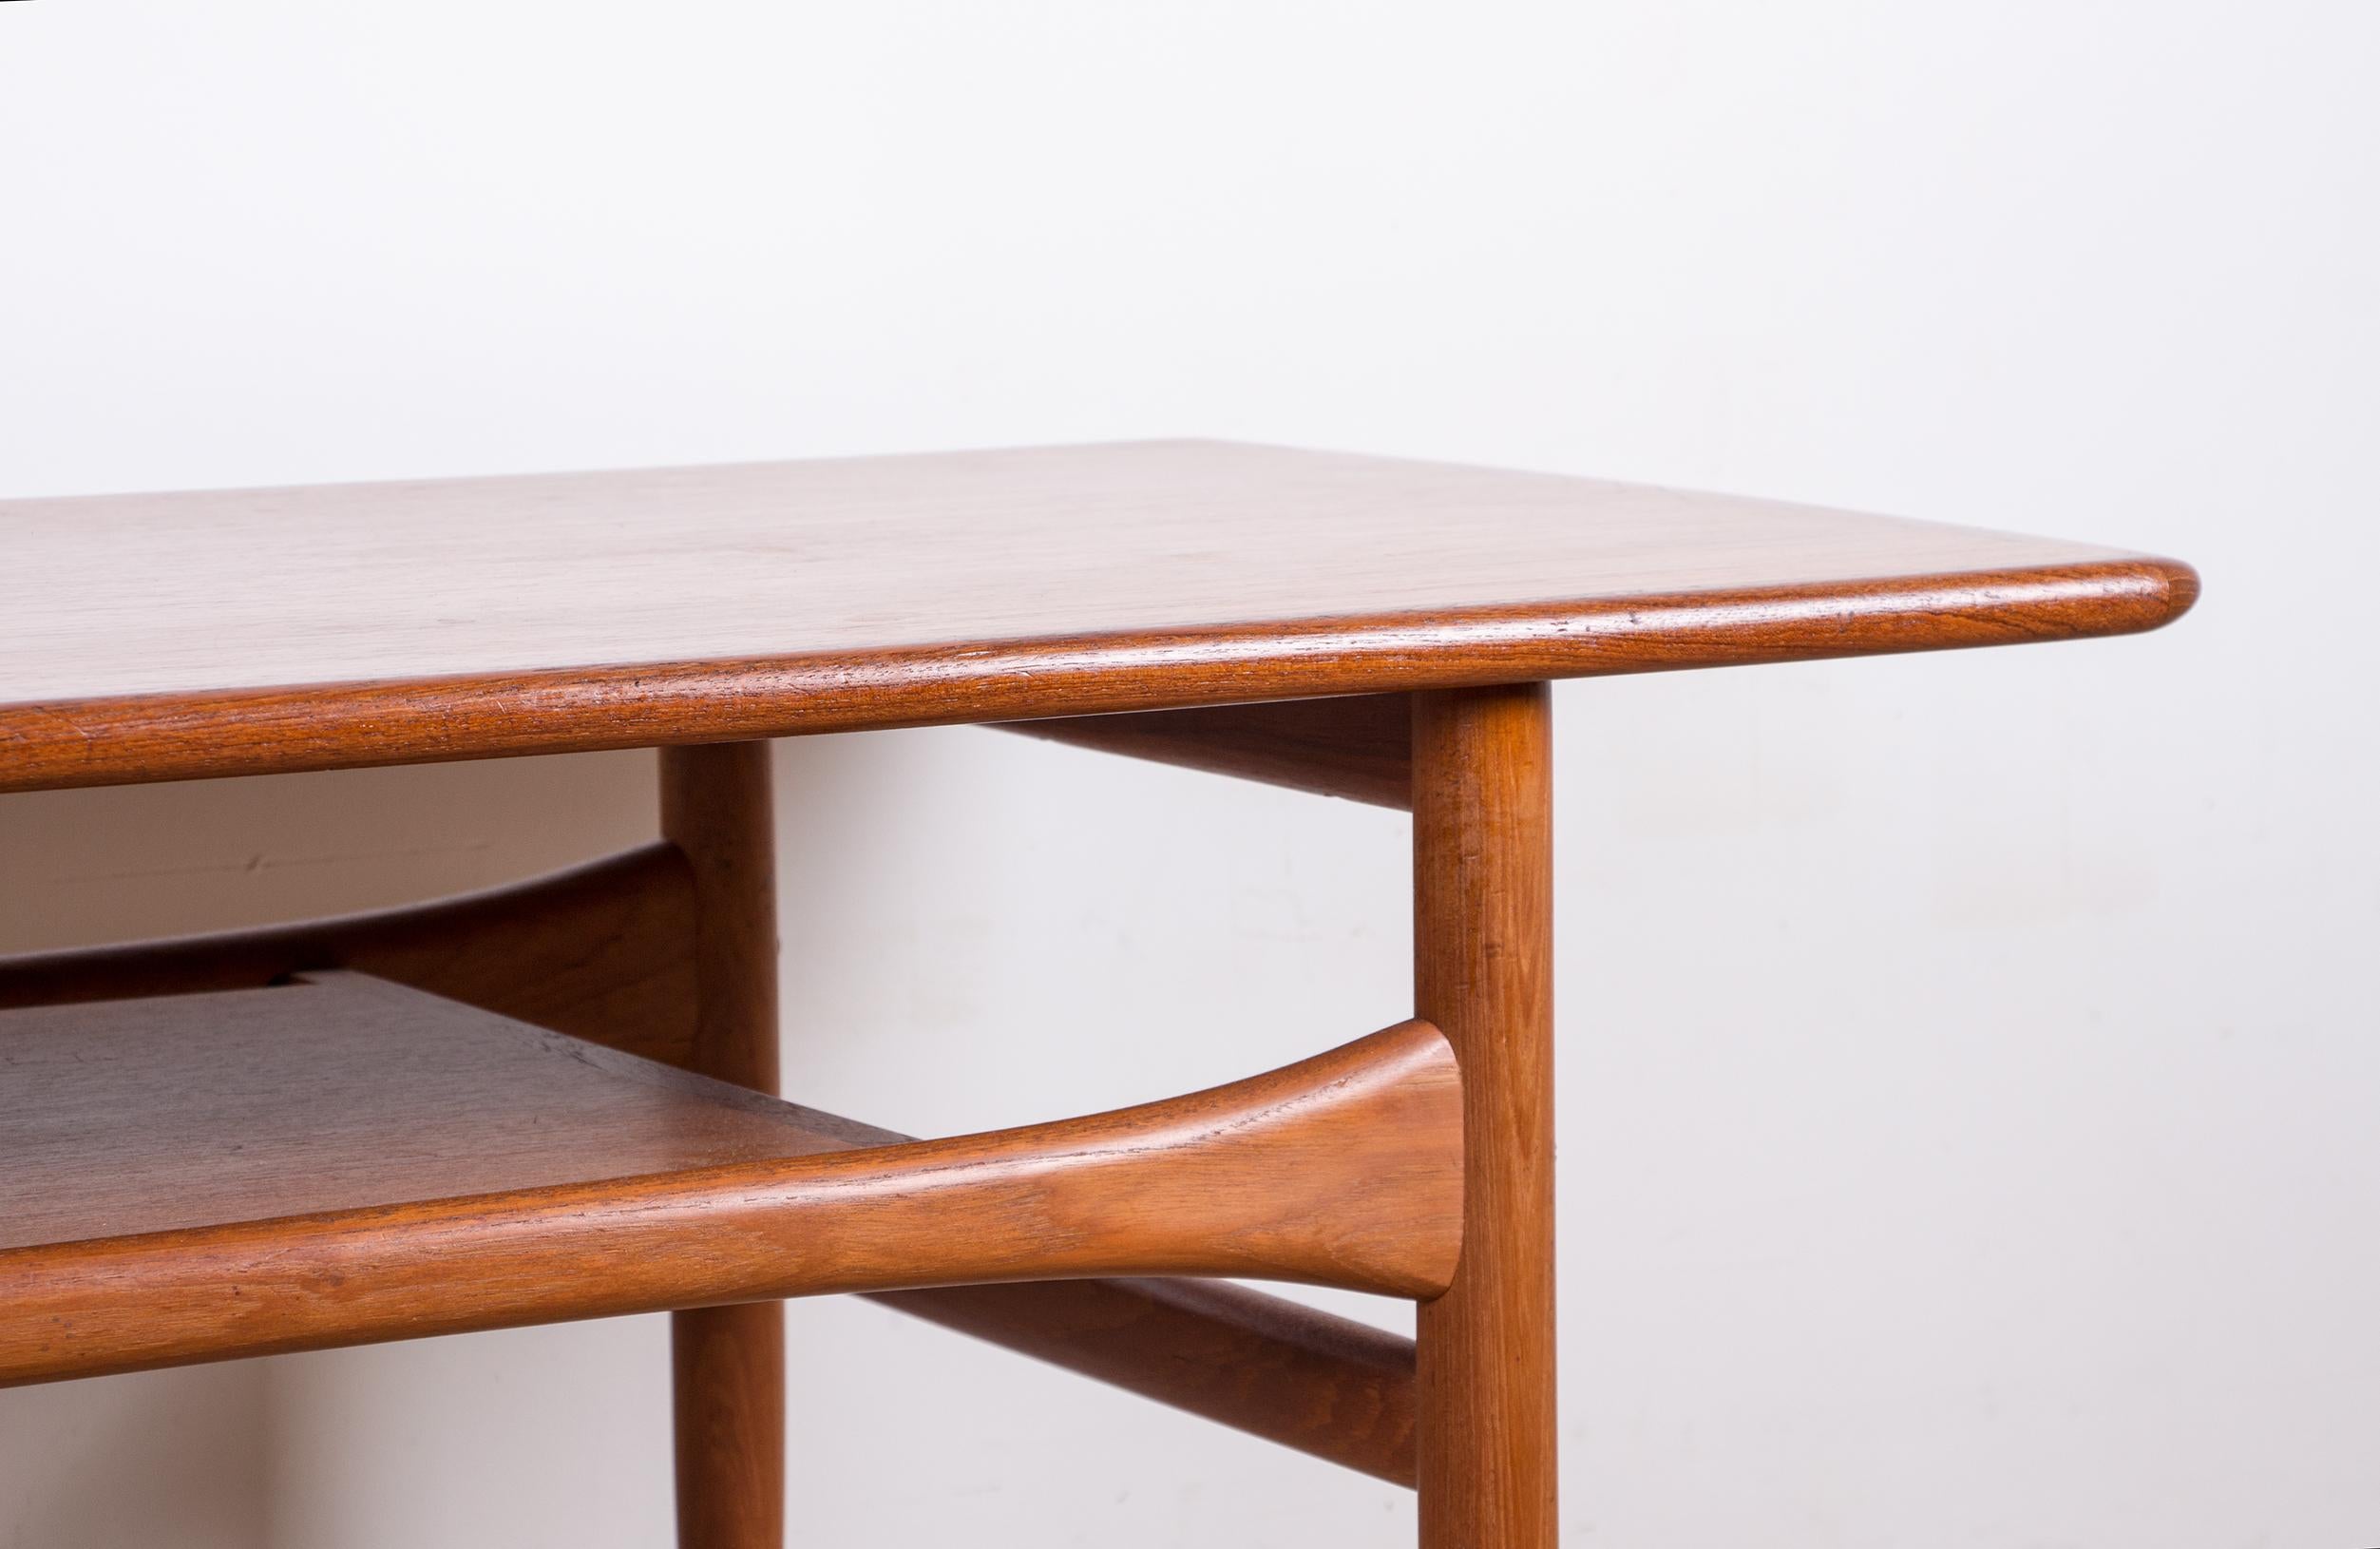 Scandinavian Modern Danish coffee table, 2 levels, in Teak by Robert Christensen for Arrebo Mobler. For Sale